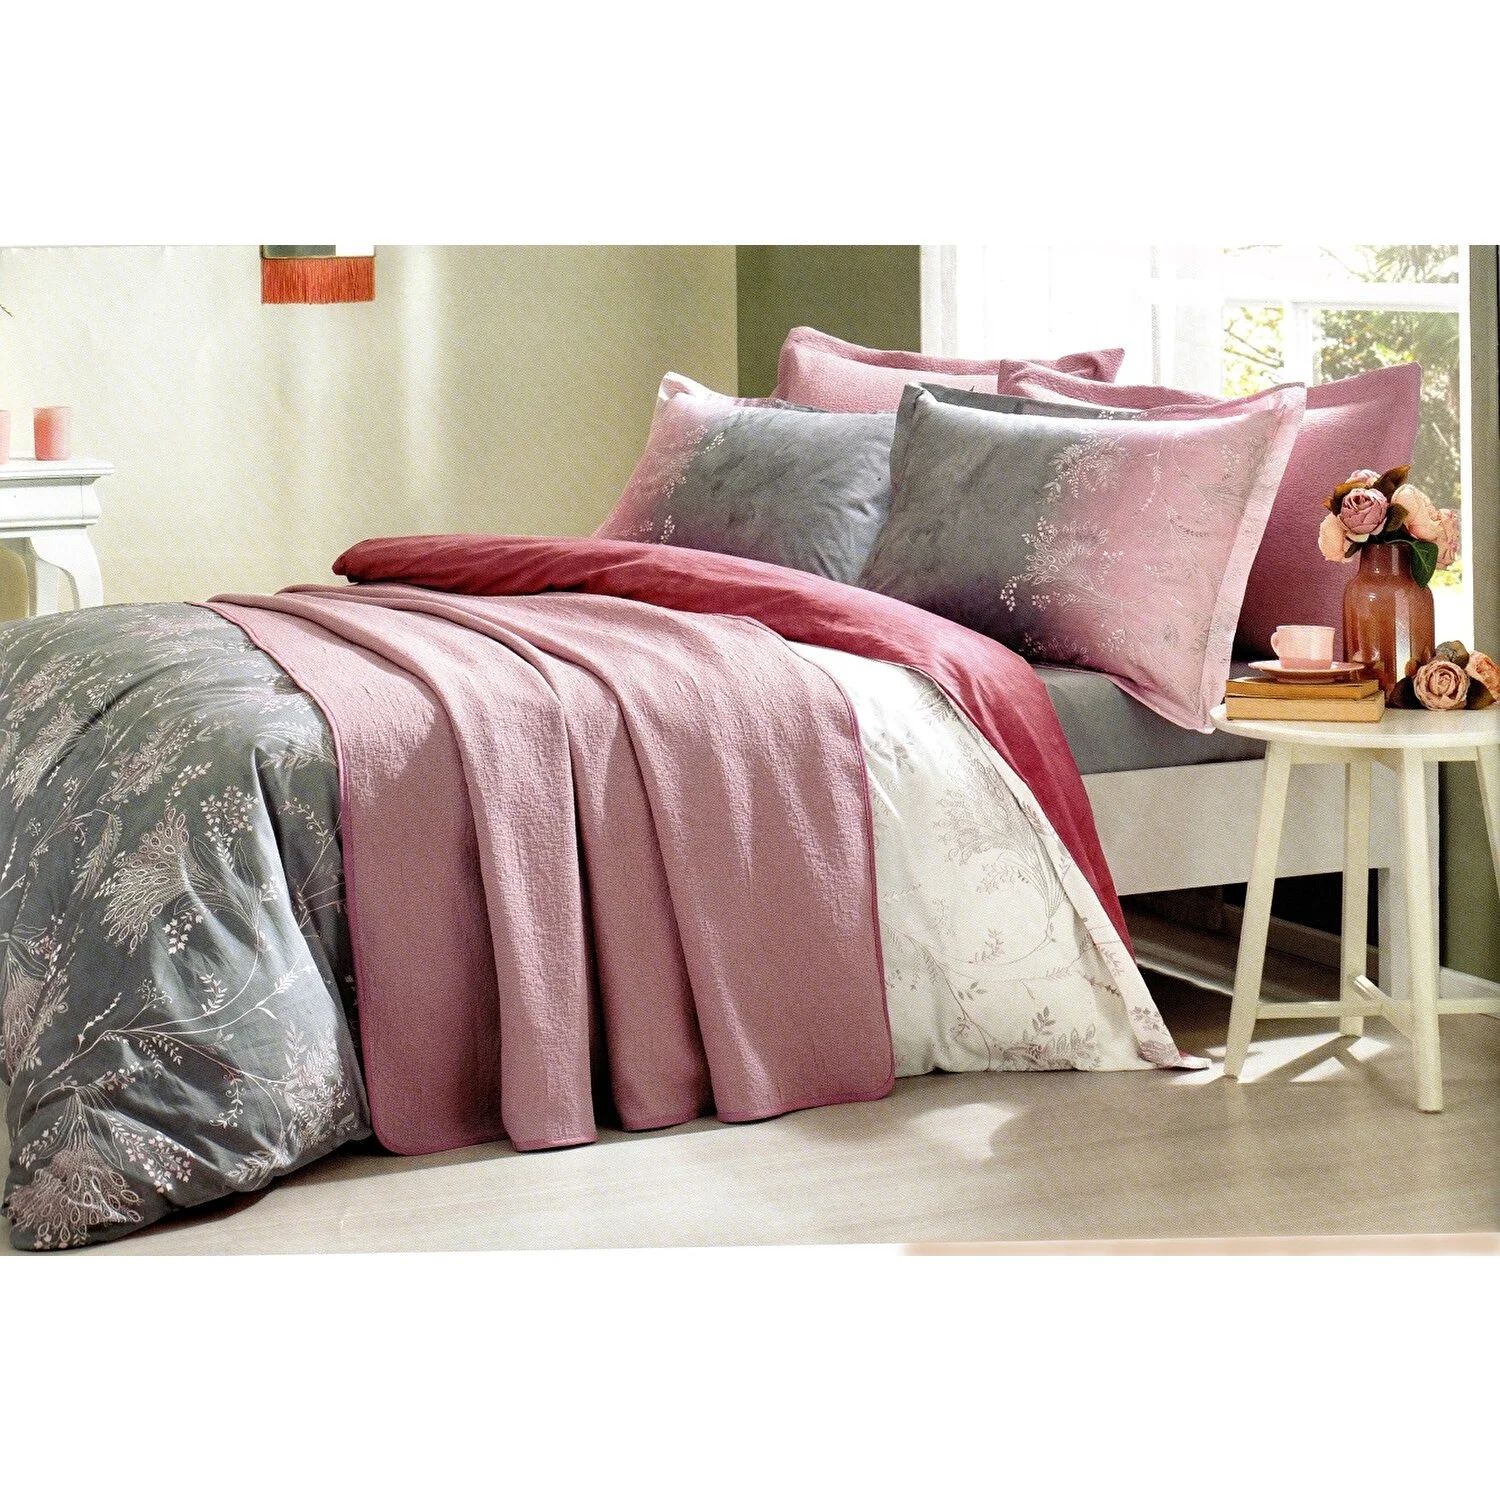 Комплект постельного белья Ozdilek Ditsy Фиолетовый комплект покрывала и пододеяльника для двуспальной кровати